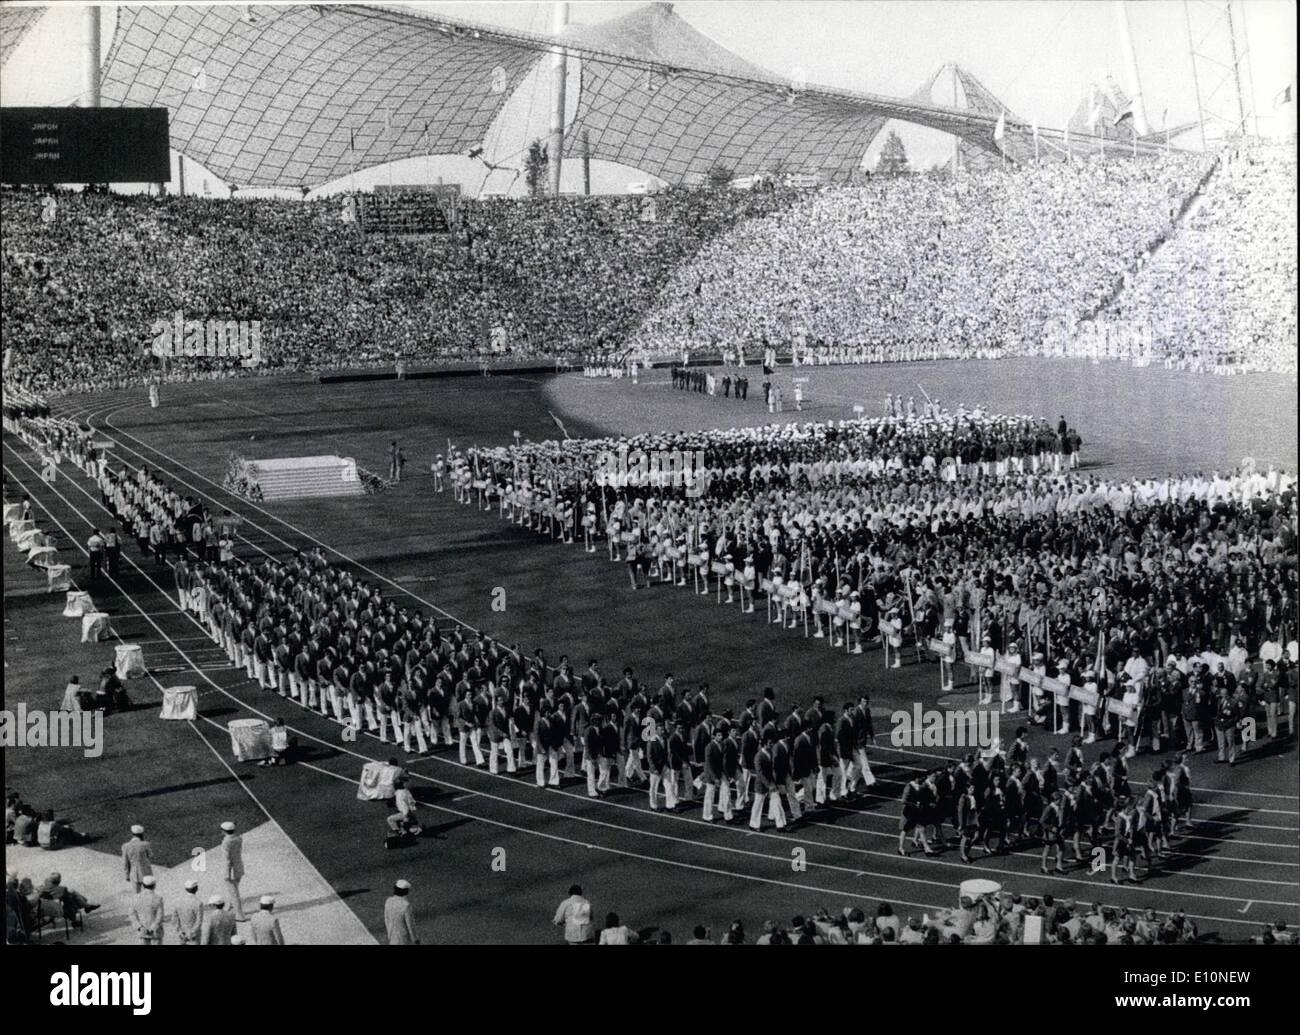 Agosto 08, 1973 - Un anno fa, XX Olimpiadi estive sono state aperte. Un sacco di sole : accompagnato la cerimonia di apertura dei giochi, quando i giovani di tutto il mondo hanno marciato nel più grande stadio, attraversato da una daringly costruito sul tetto della tenda. più di 80,.000 persone guardano i giochi live e molti altri milioni di persone in tutto il mondo ha visto le foto sul televisore. Purtroppo il ''allegro giochi'' sono stati rivolti alla tragedia da un gruppo di terroristi arabi che hanno attaccato il team israeliano, uccidendo 11 dei suoi membri e loro pullman Foto Stock